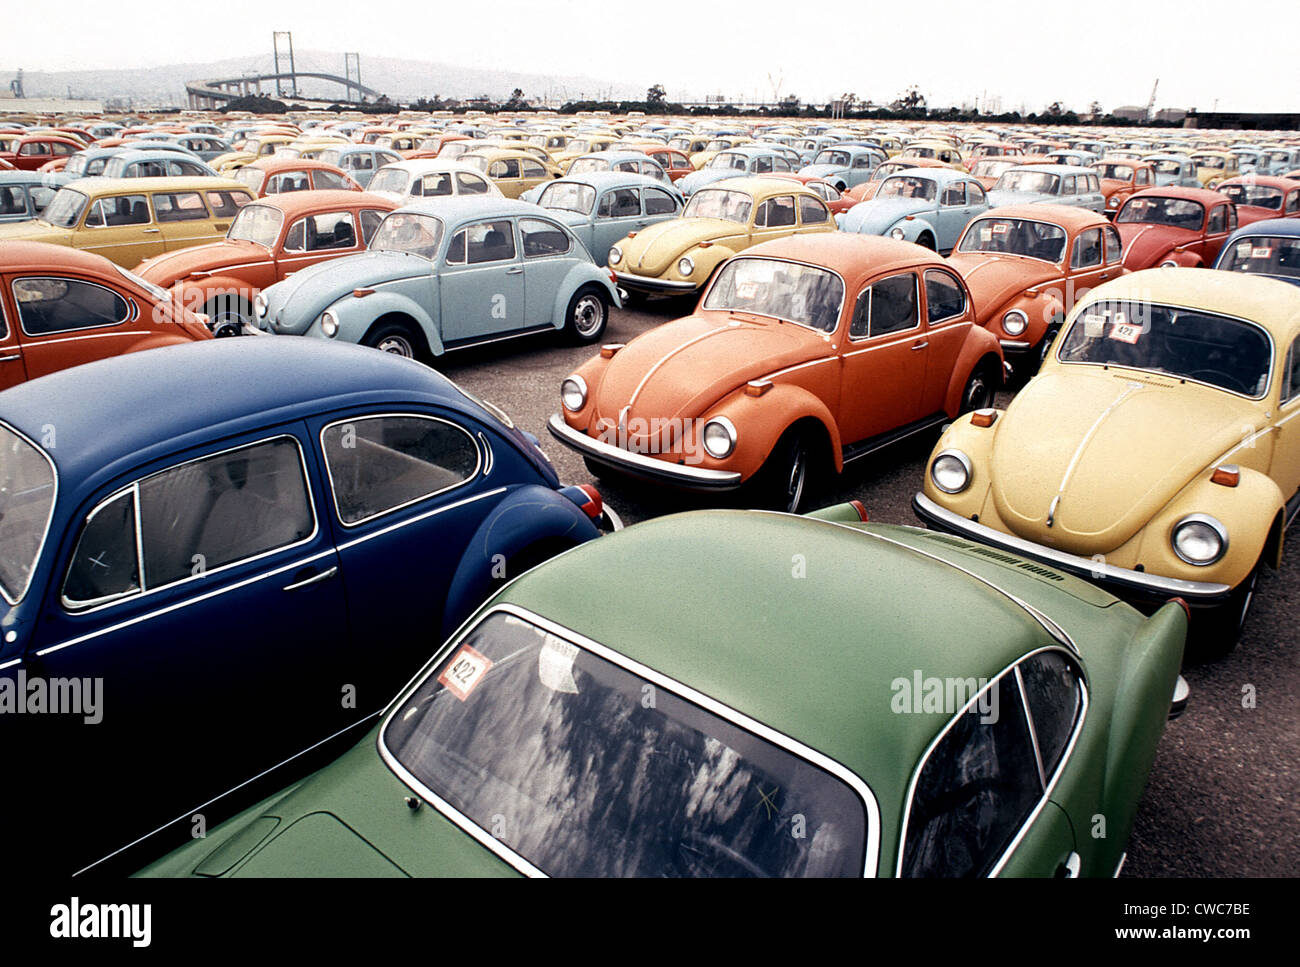 Les Coccinelles Volkswagen importés sur une jetée. Ces voitures allemandes voitures japonaises importées ont été parmi les millions de concurrencer Banque D'Images